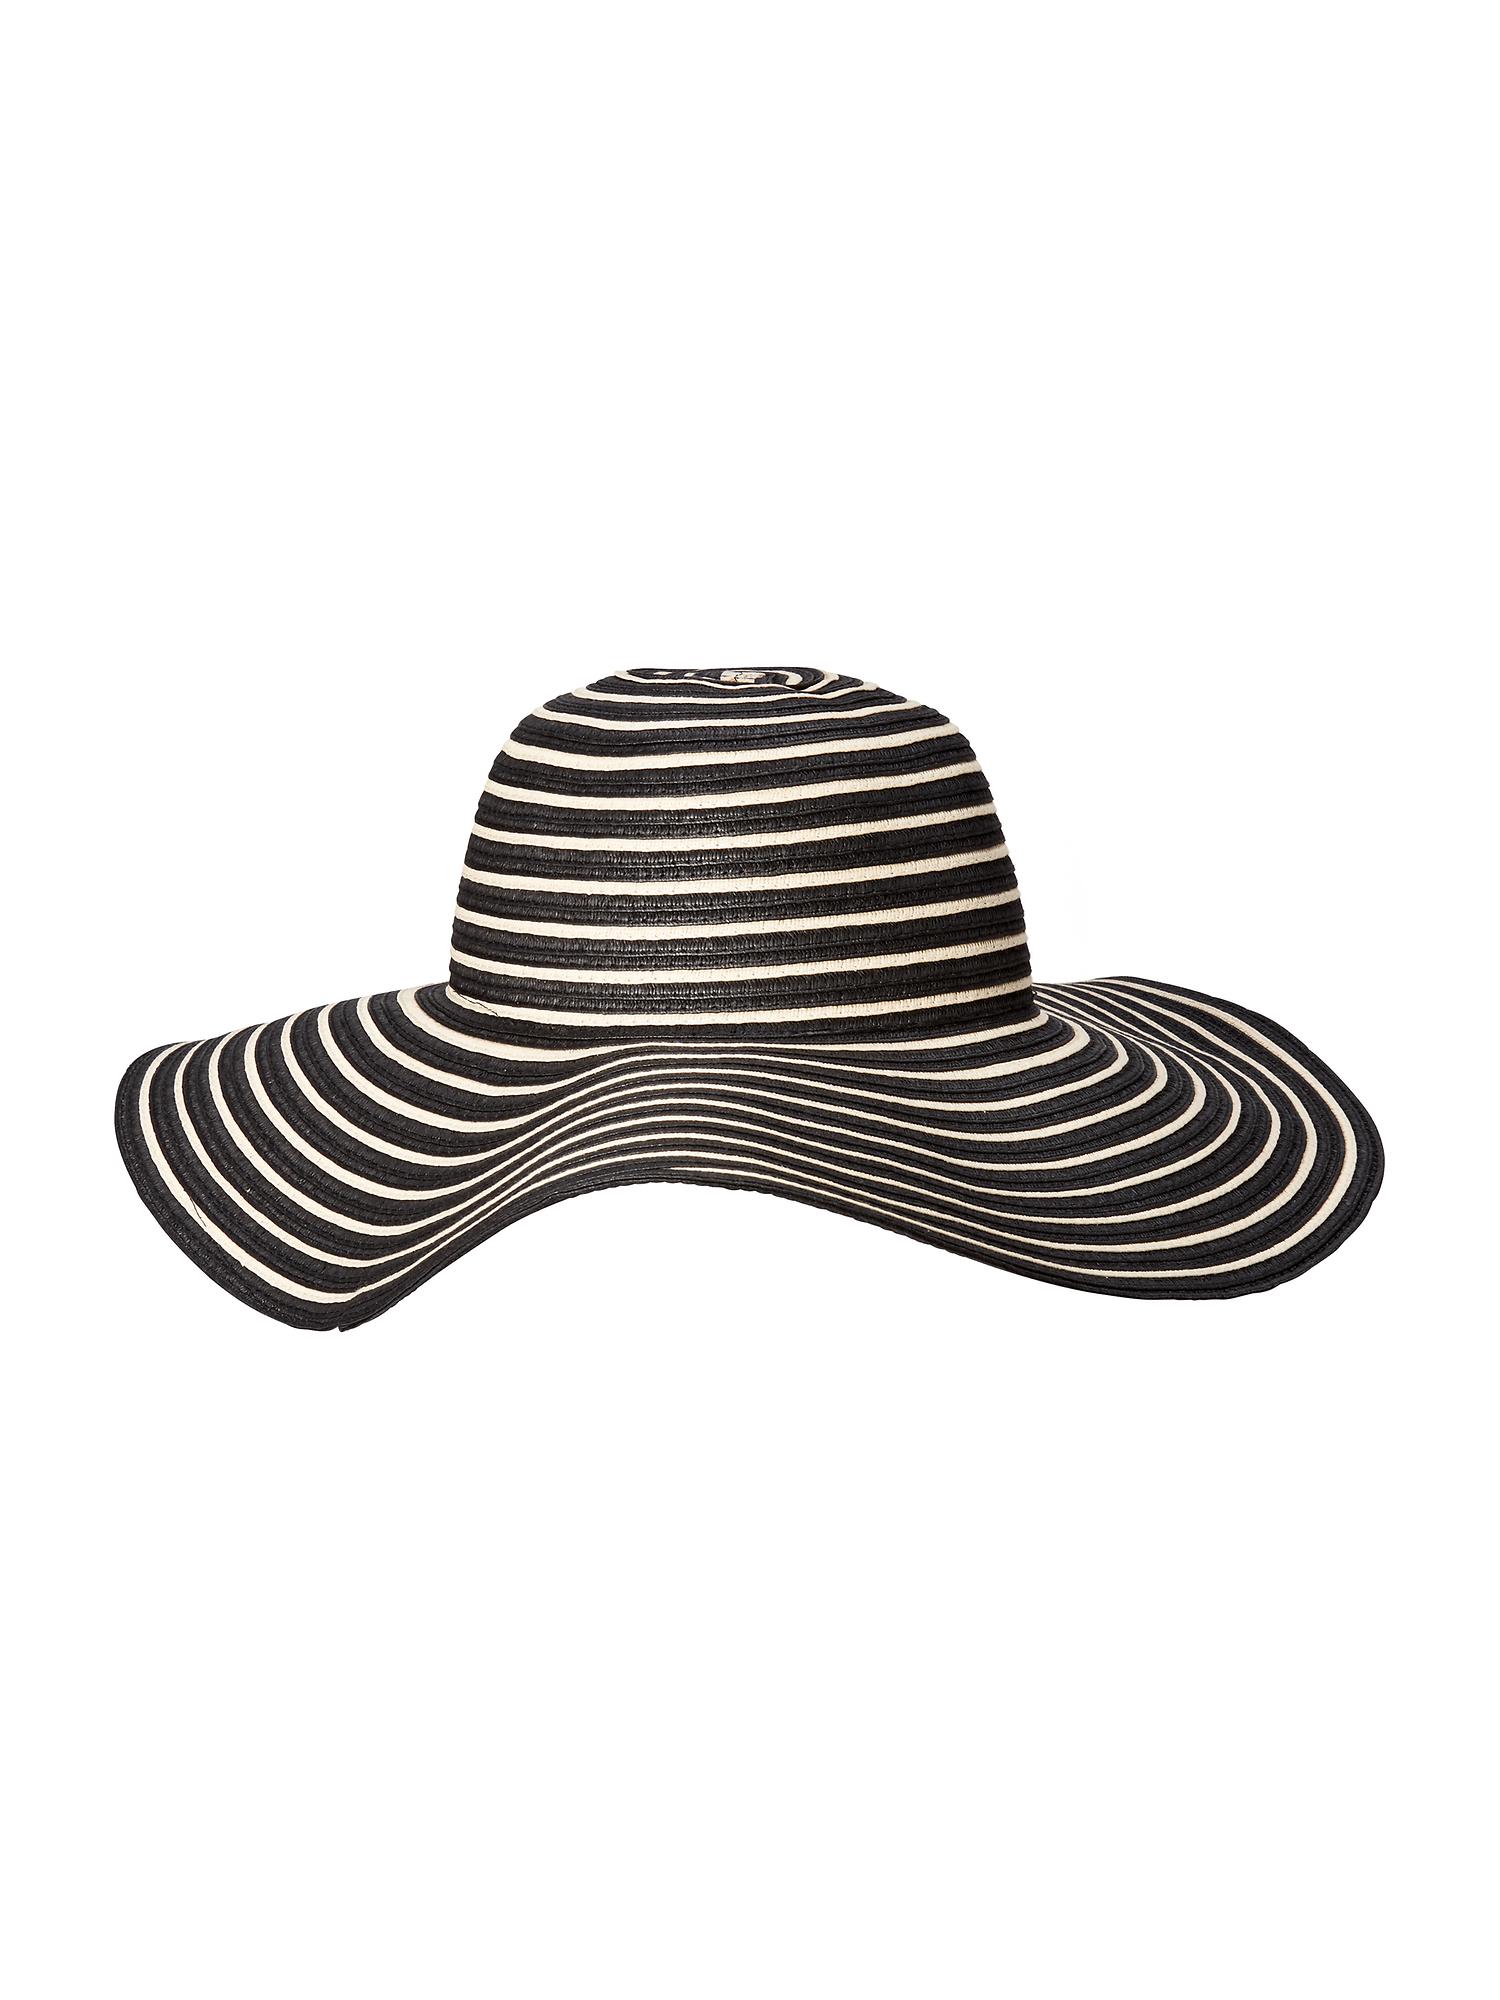 Floppy Sun Hat For Women 